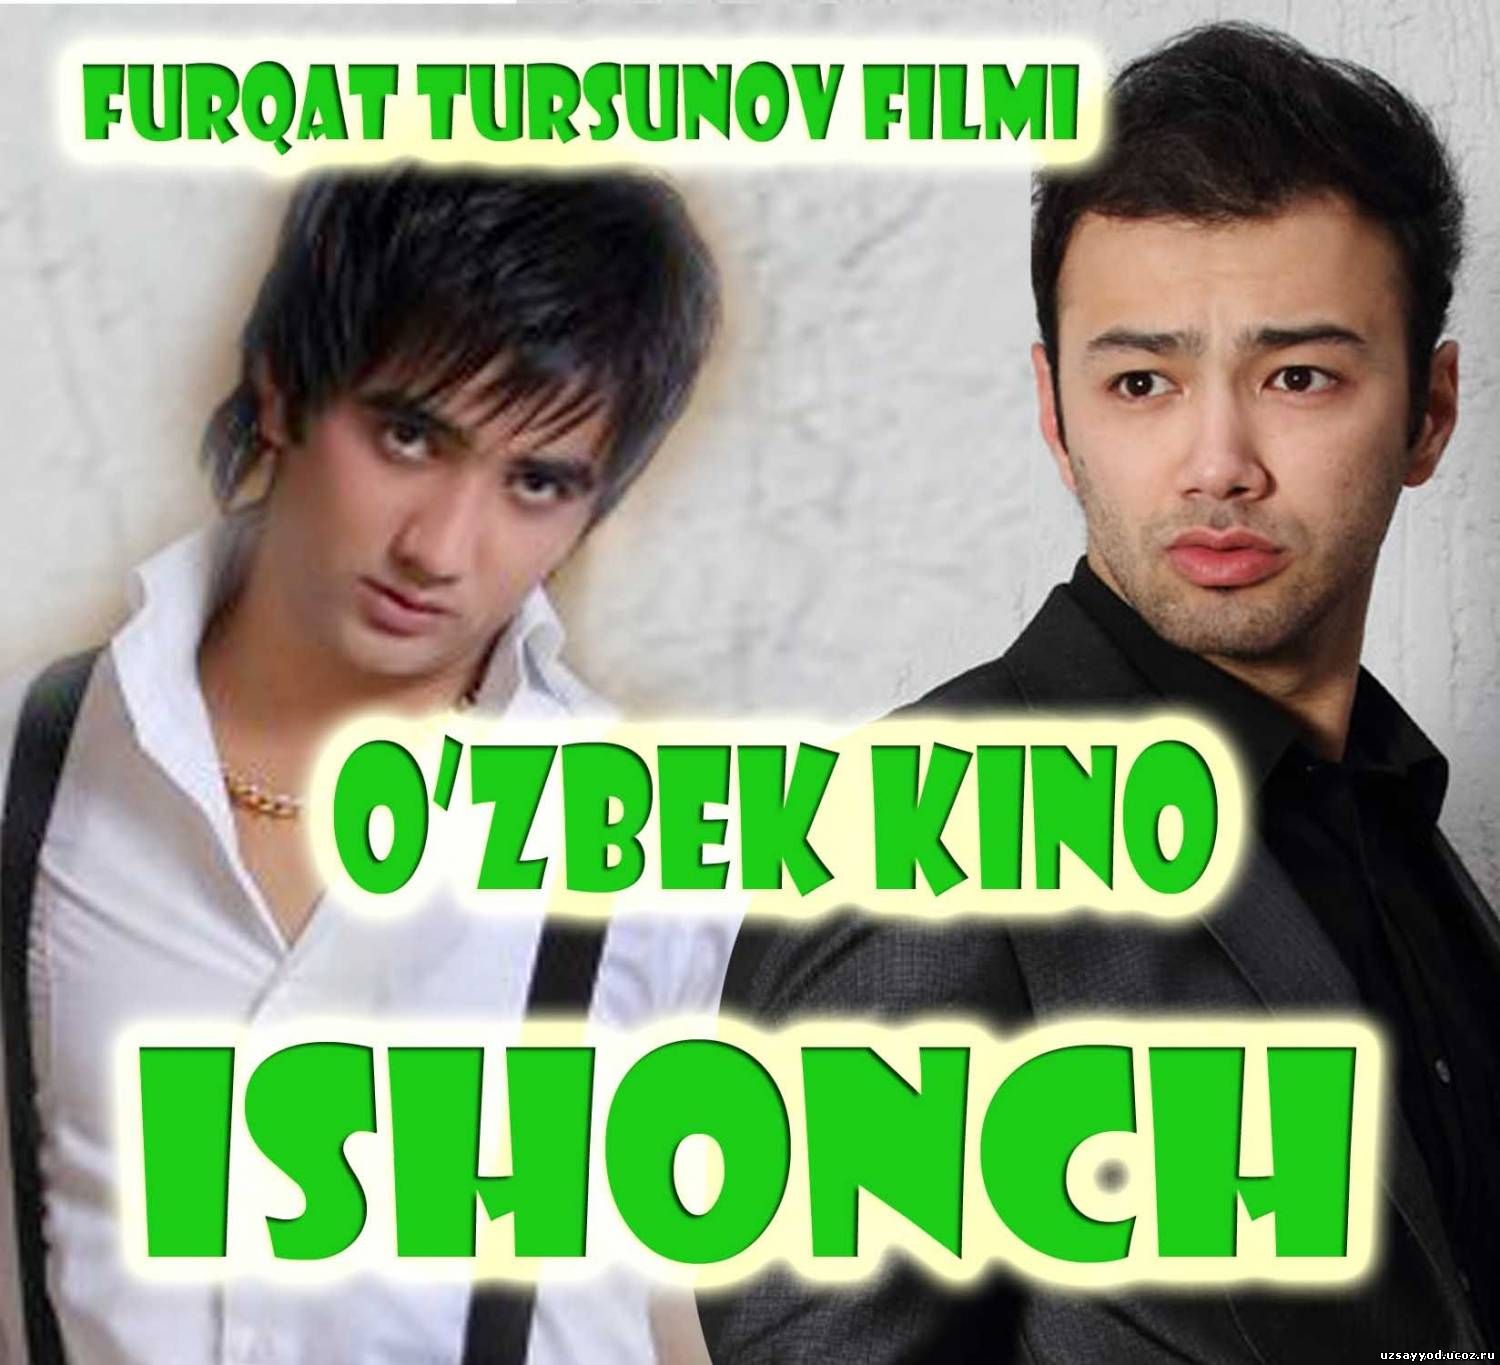 Ishonch (O'zbek Kino 2014)